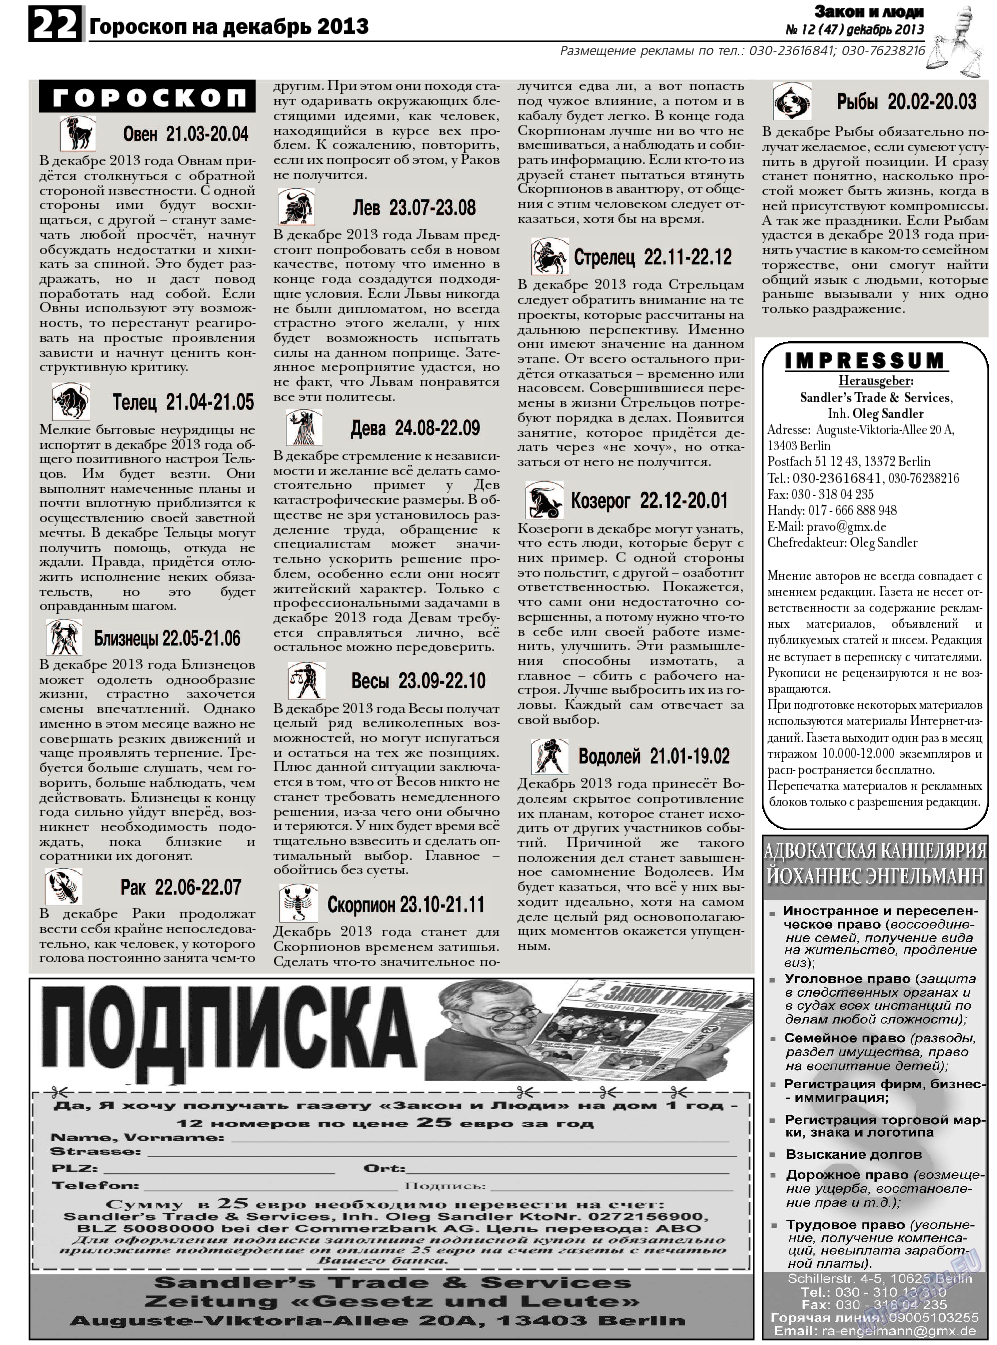 Закон и люди, газета. 2013 №12 стр.22